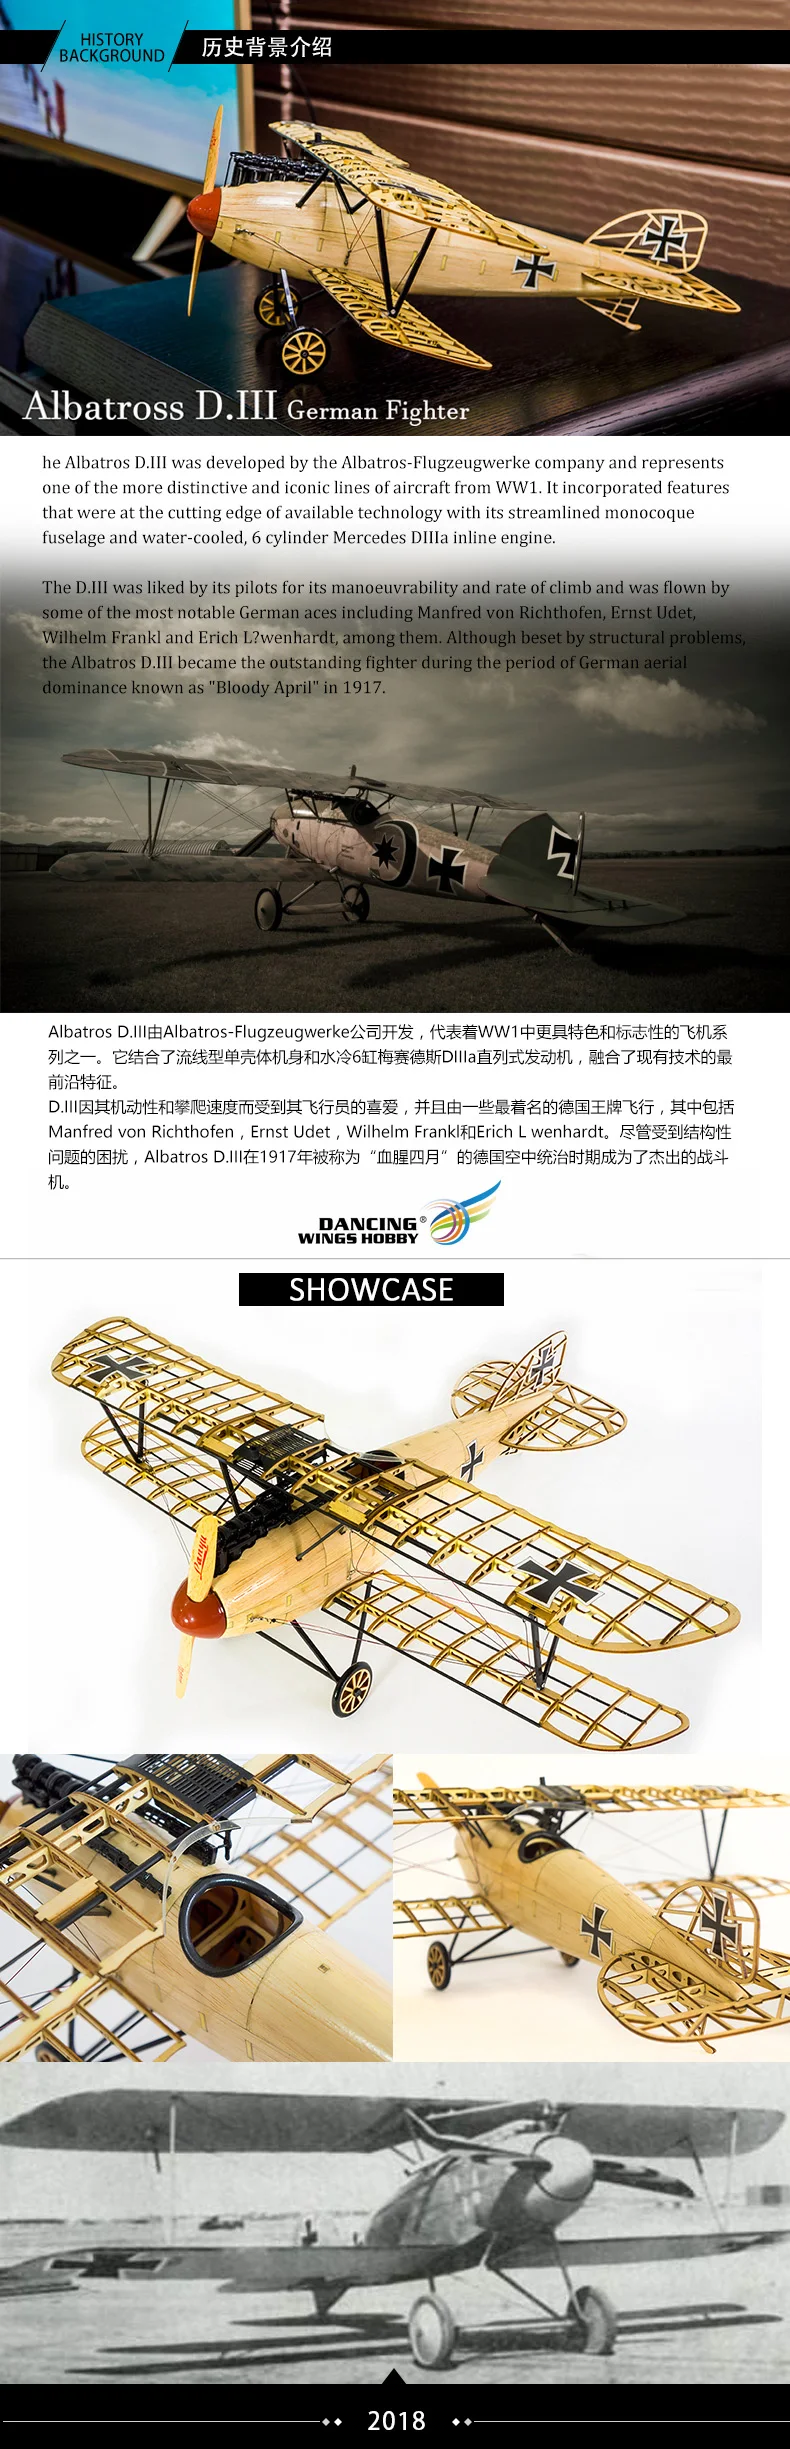 Статическая модель самолета Albatross 500 мм размах крыльев лазерная резка Basla деревянный аэромодельный самолет для декорирования сбора